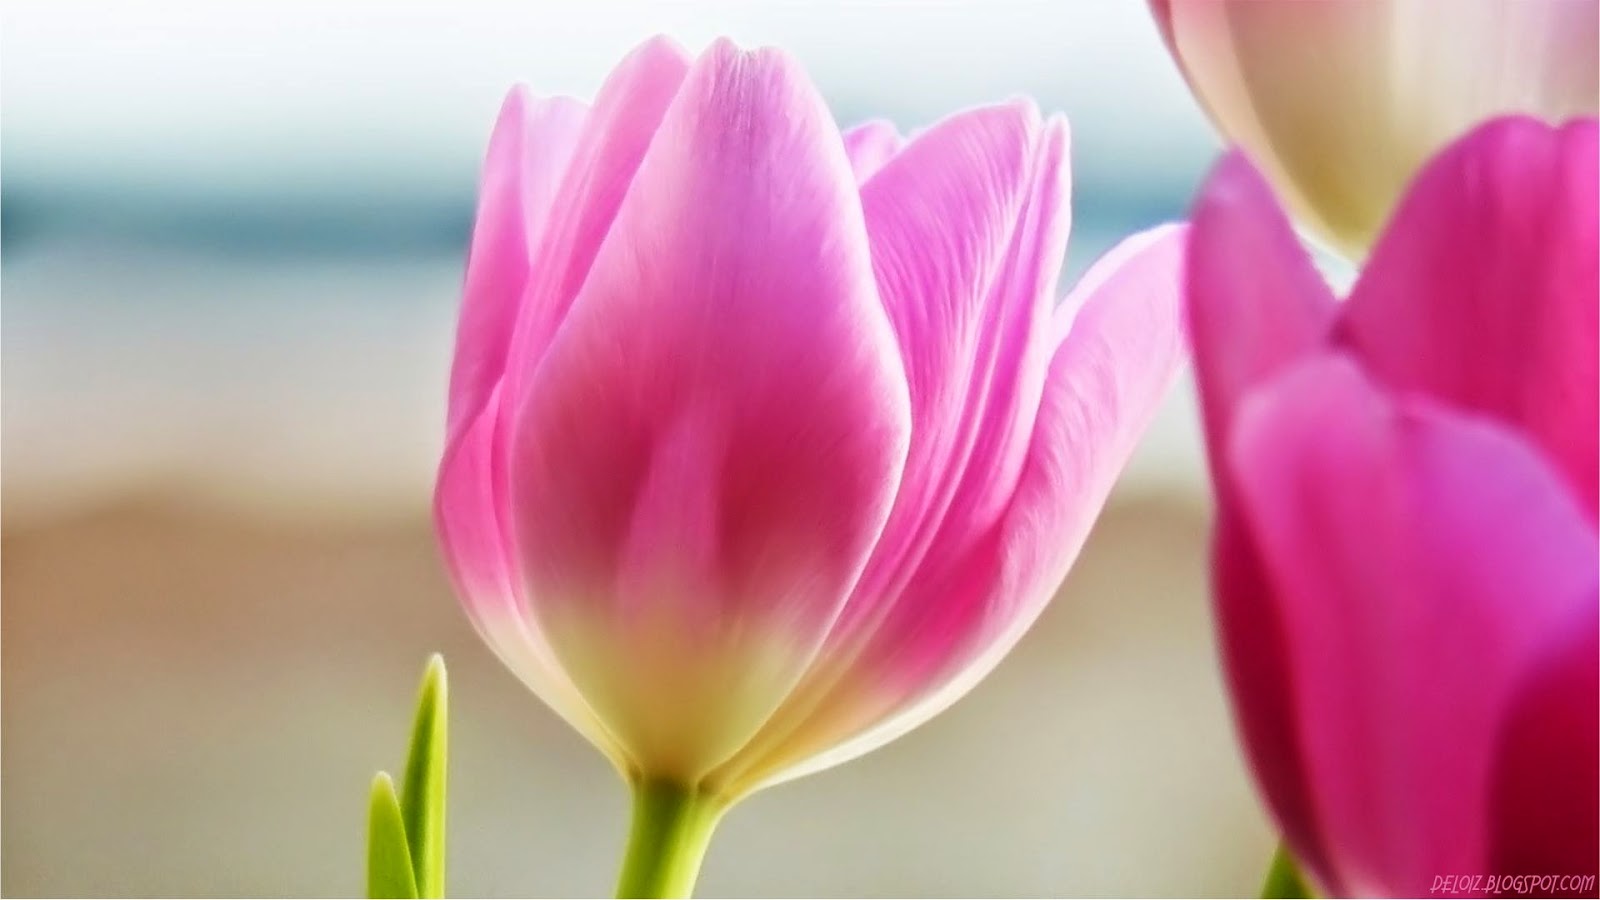 WALLPAPER ANDROID - IPHONE: Wallpaper Bunga Tulip Pink